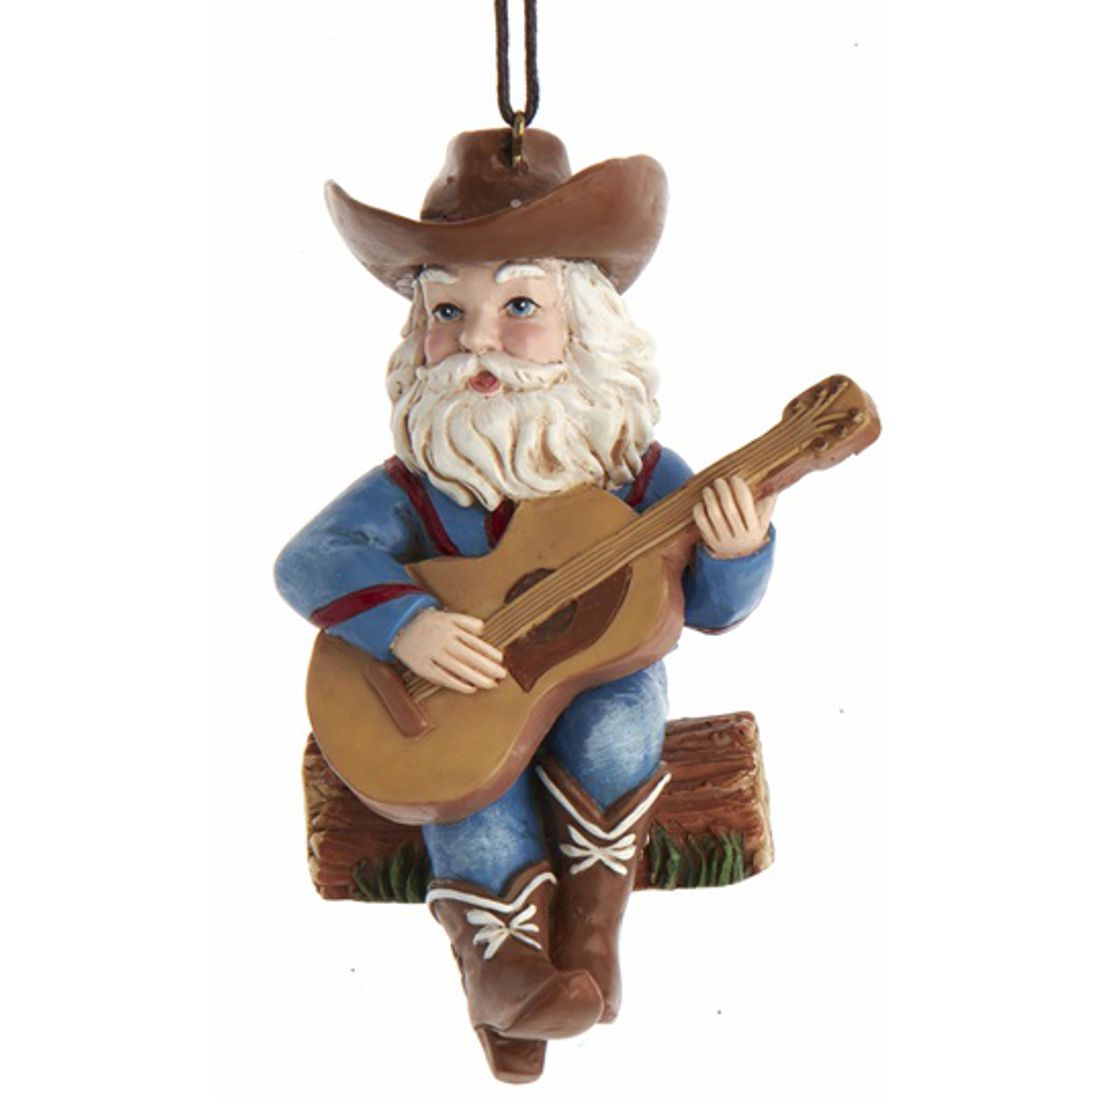 Weihnachtsschmuck - The Banjo Player